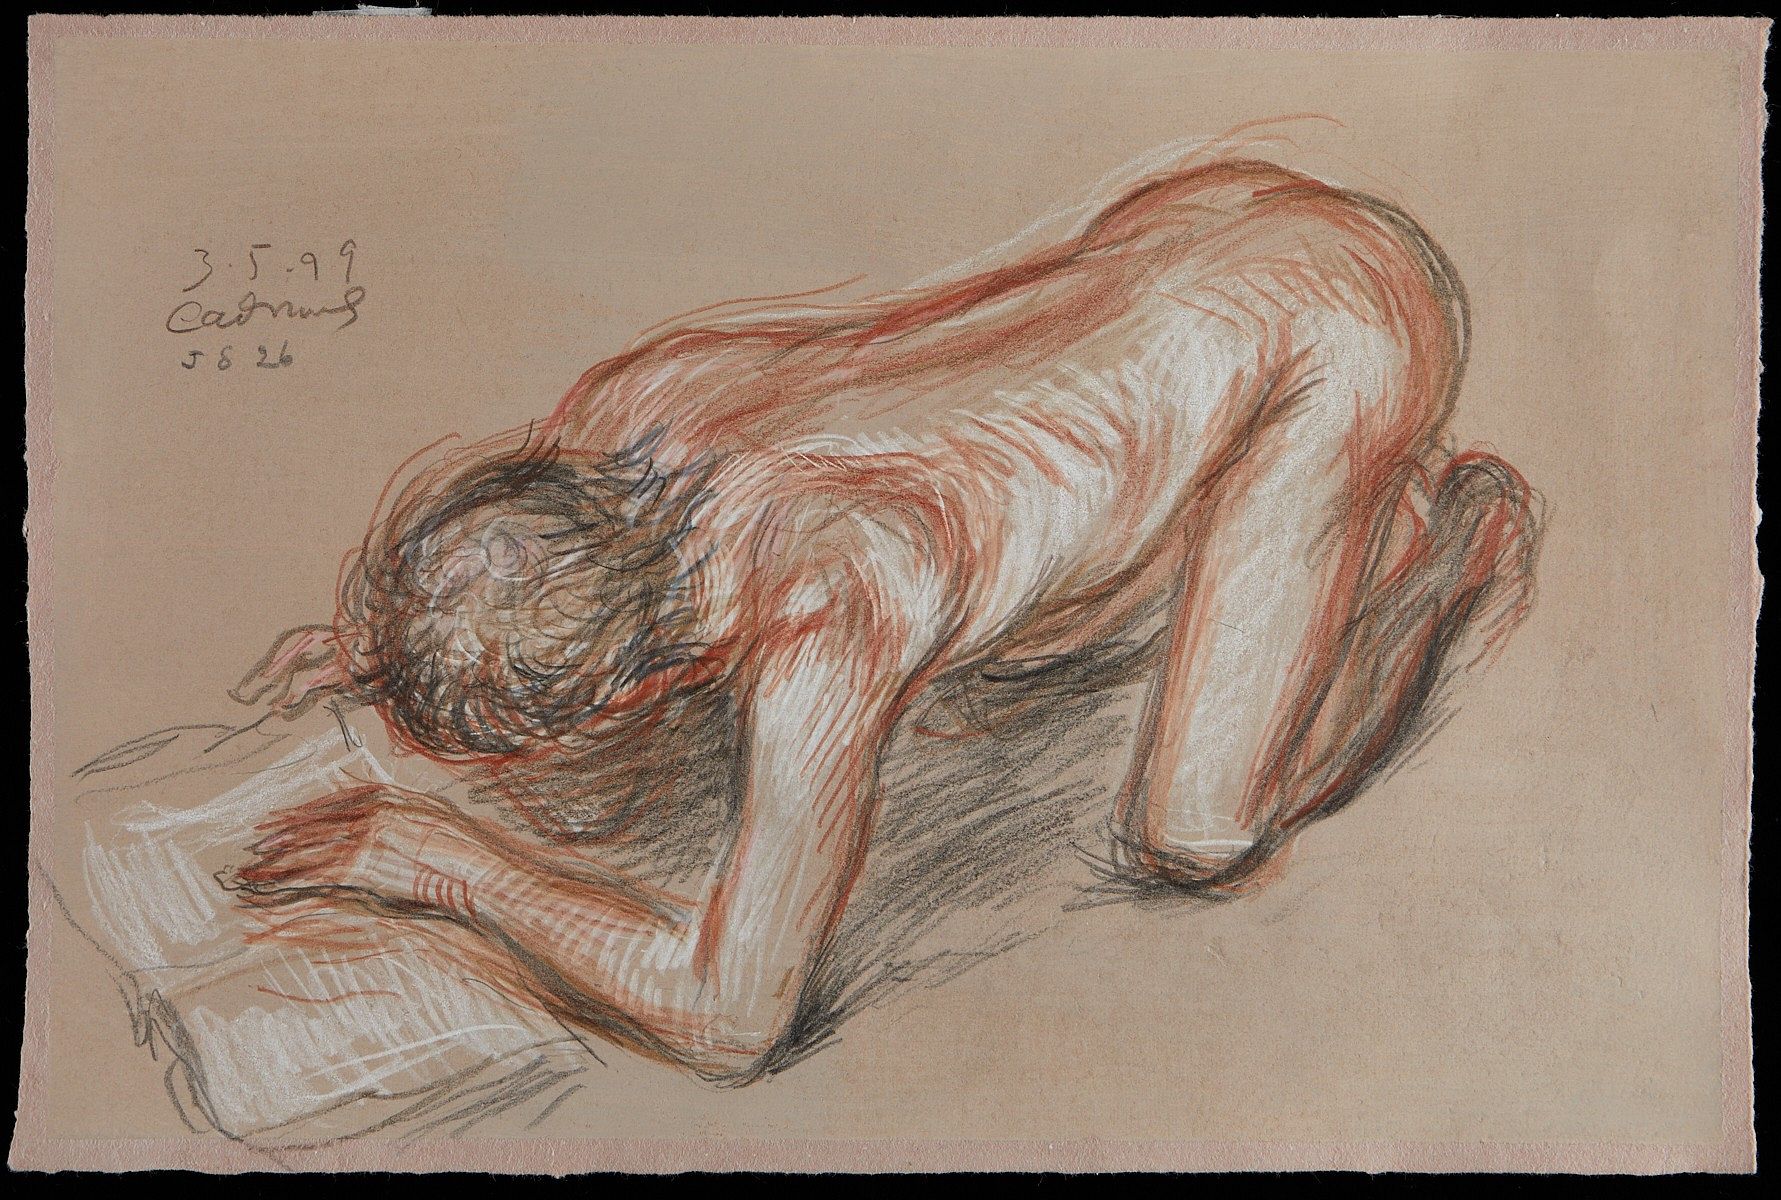 Paul Cadmus Nude Figure Crayon on Paper